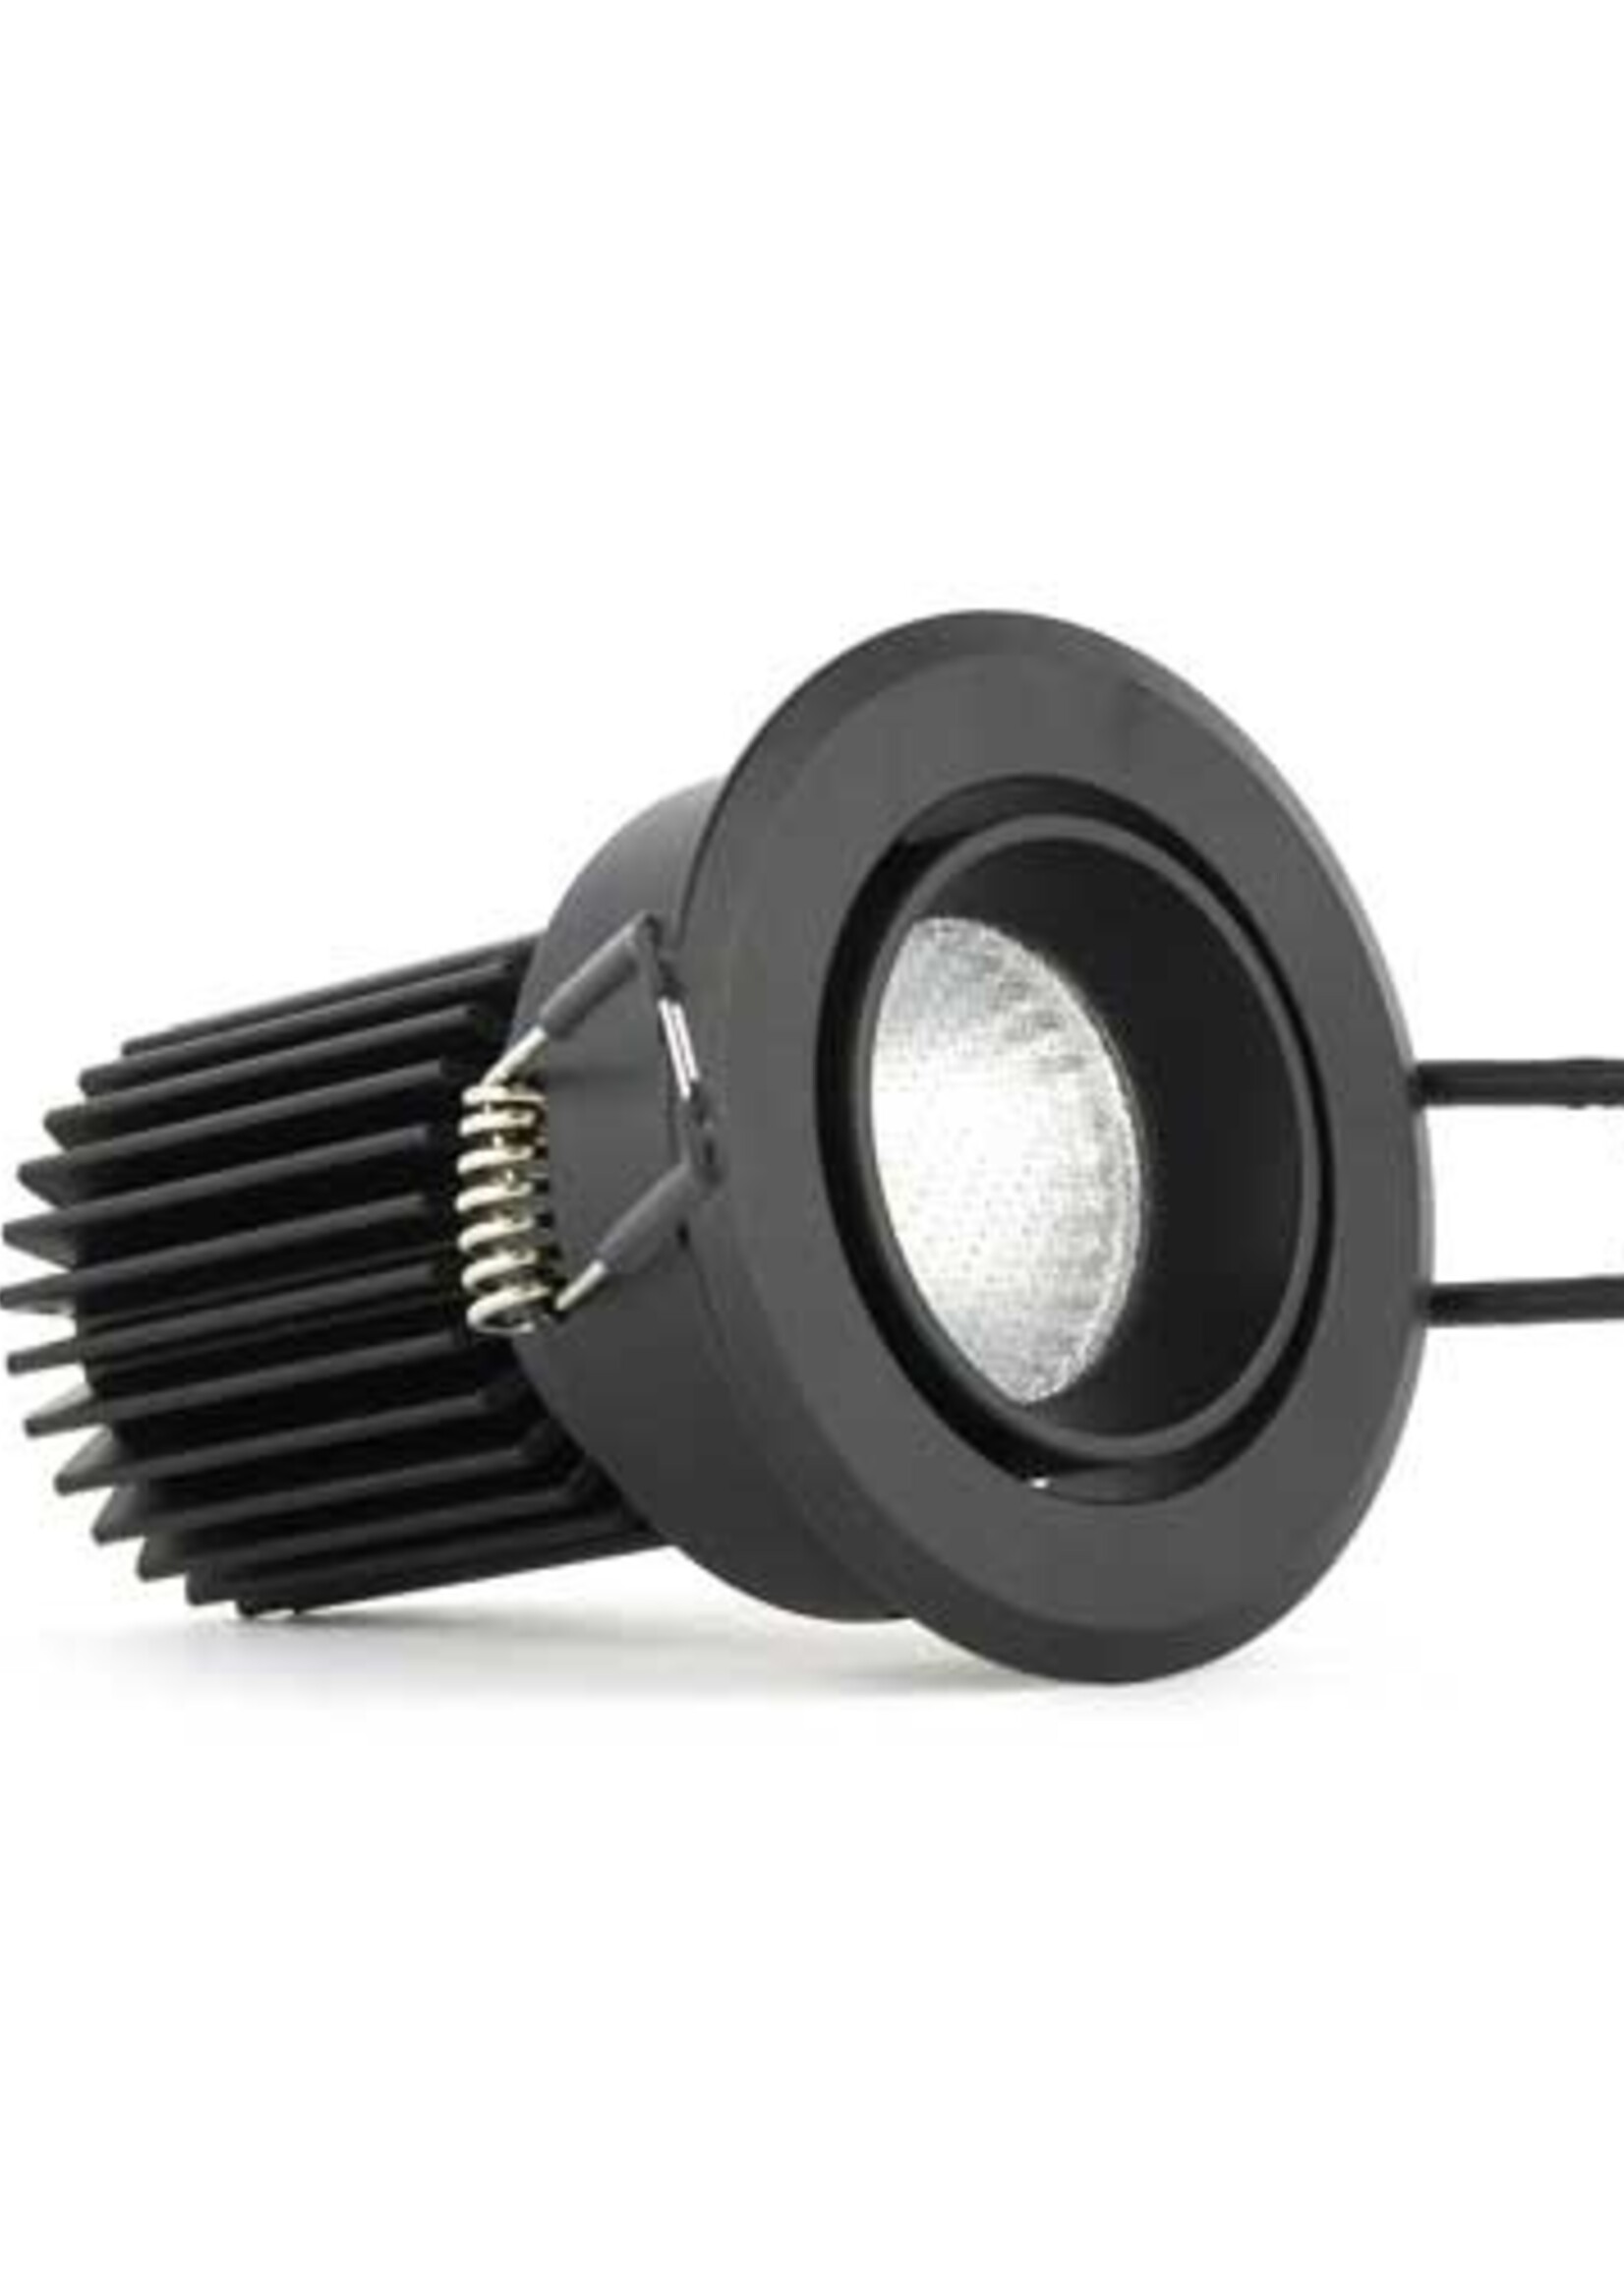 SOLISTECH Black LED Downlight 5W 3000K warm white ⌀70mm tiltable